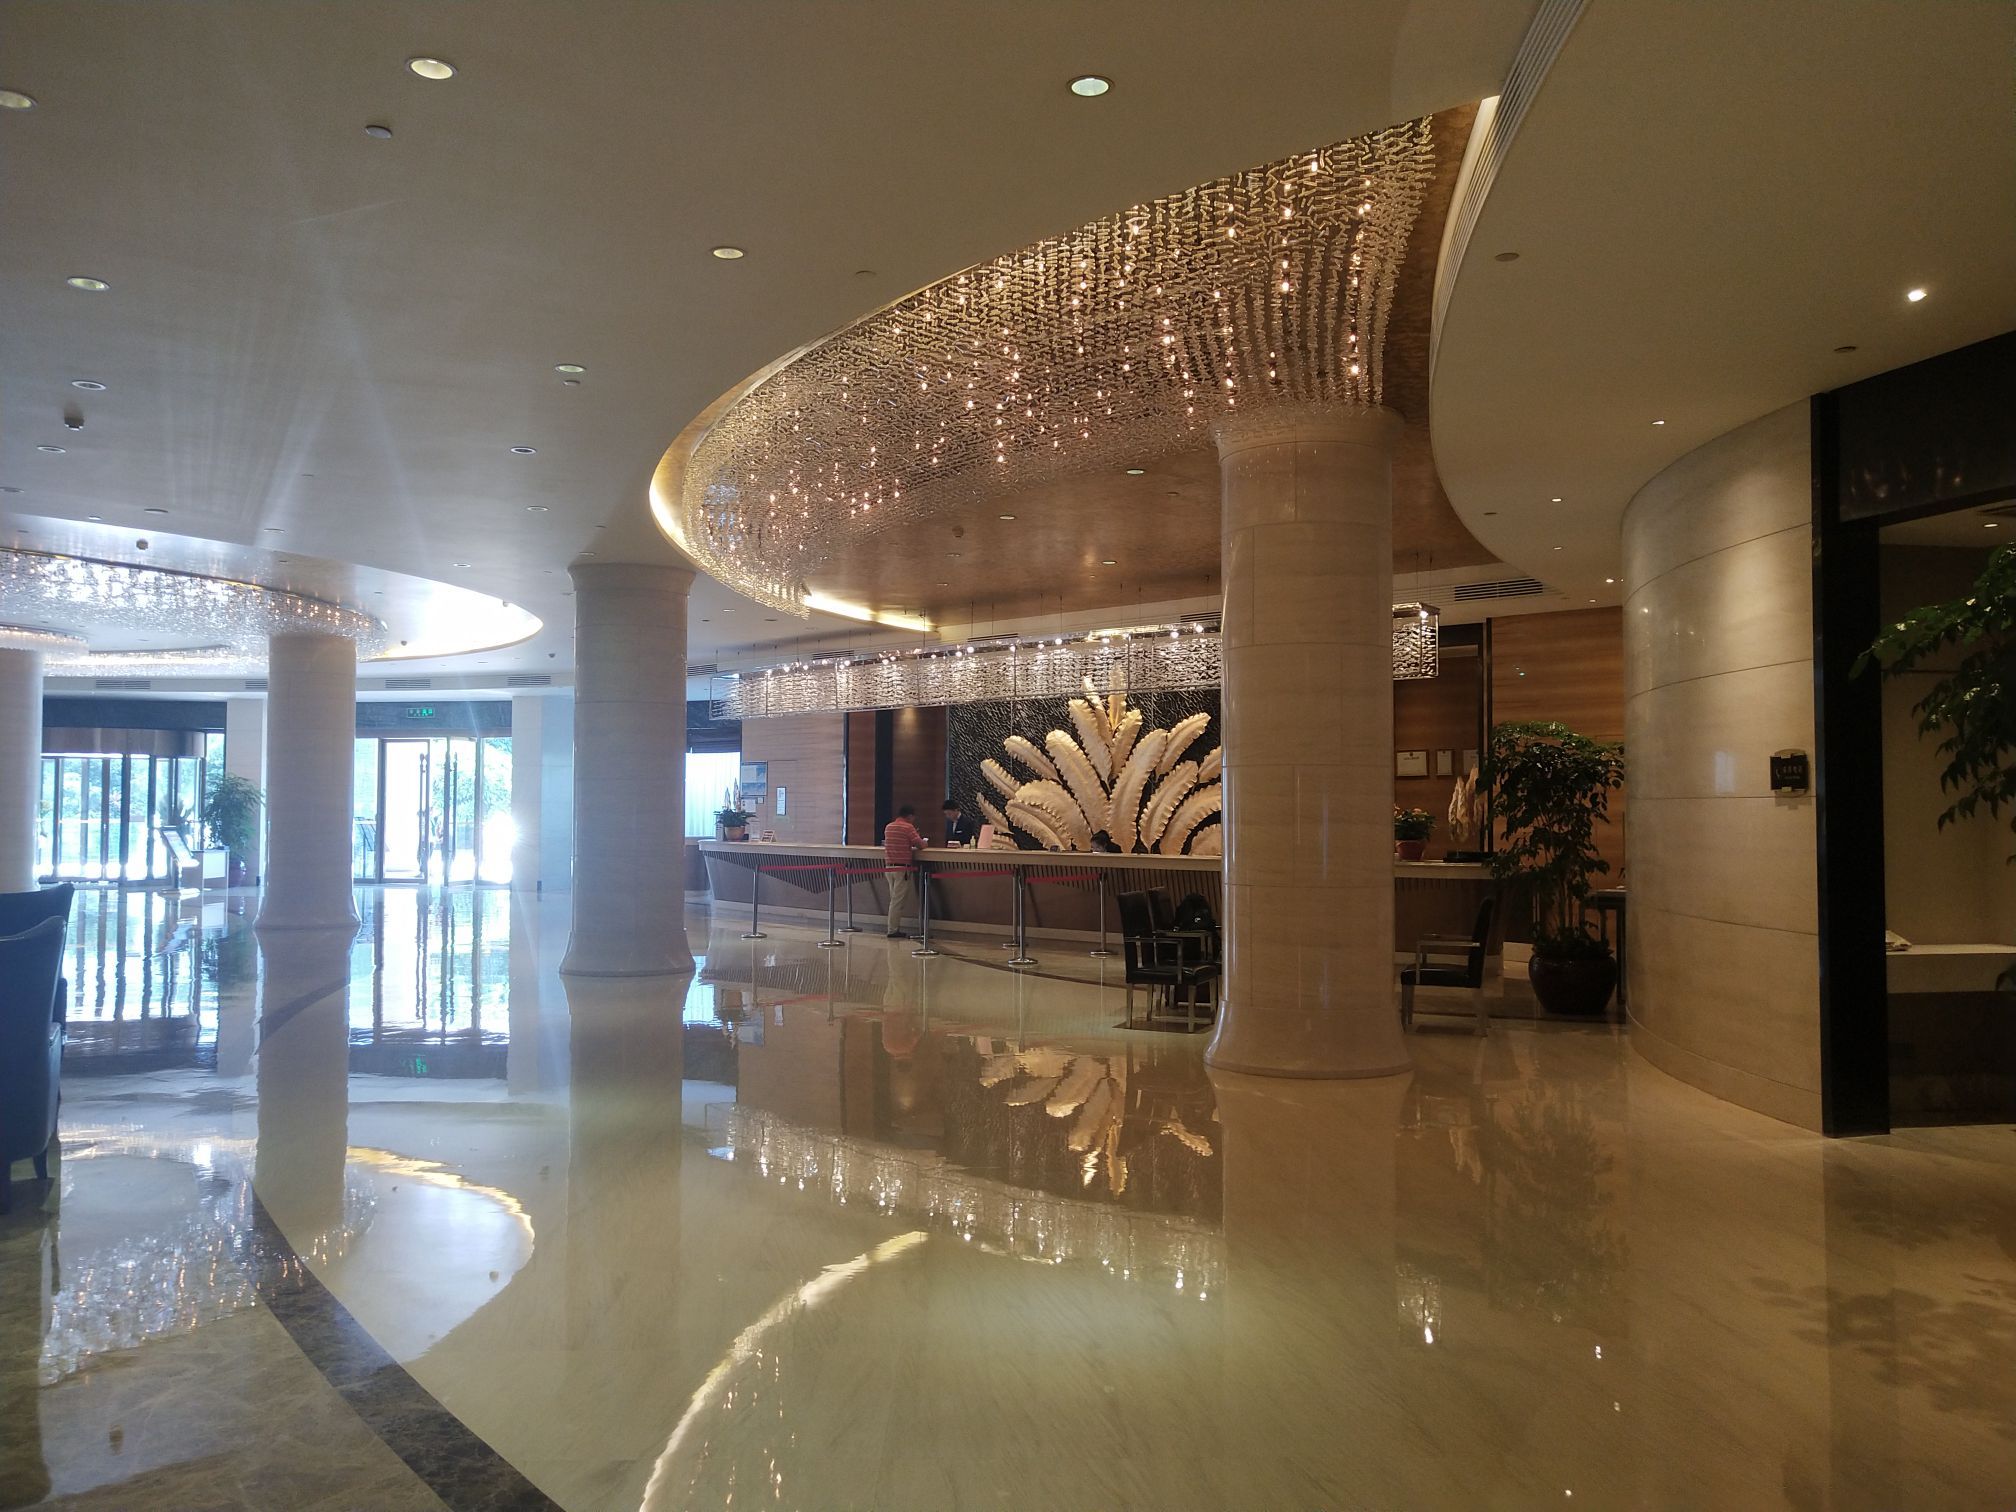 晋江爱乐国际酒店水疗图片